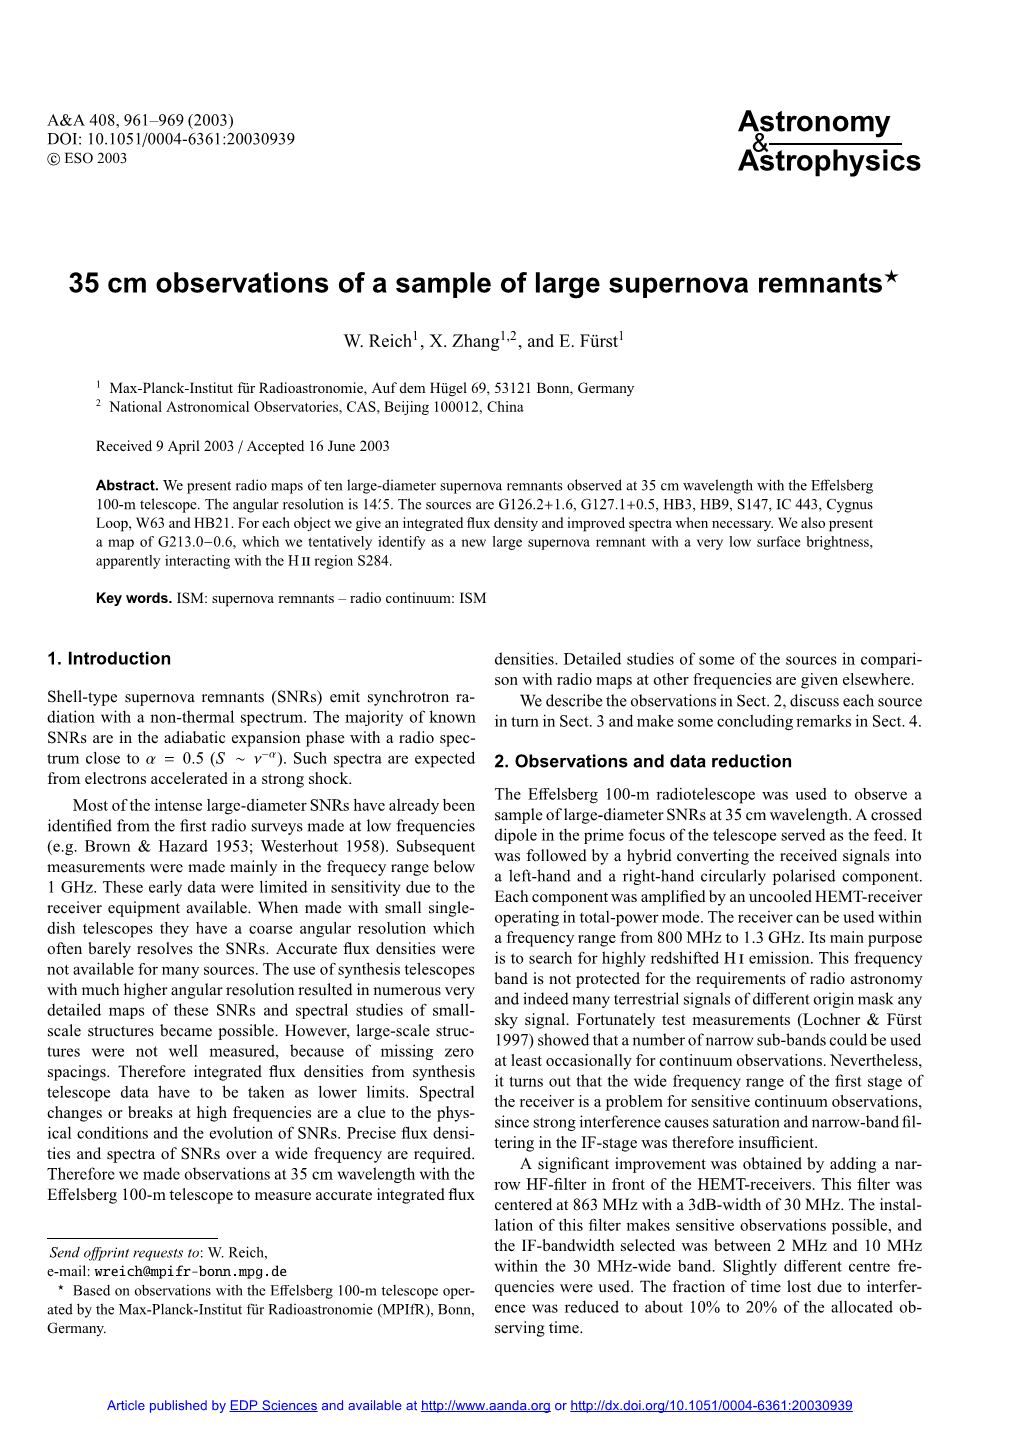 35 Cm Observations of a Sample of Large Supernova Remnants?